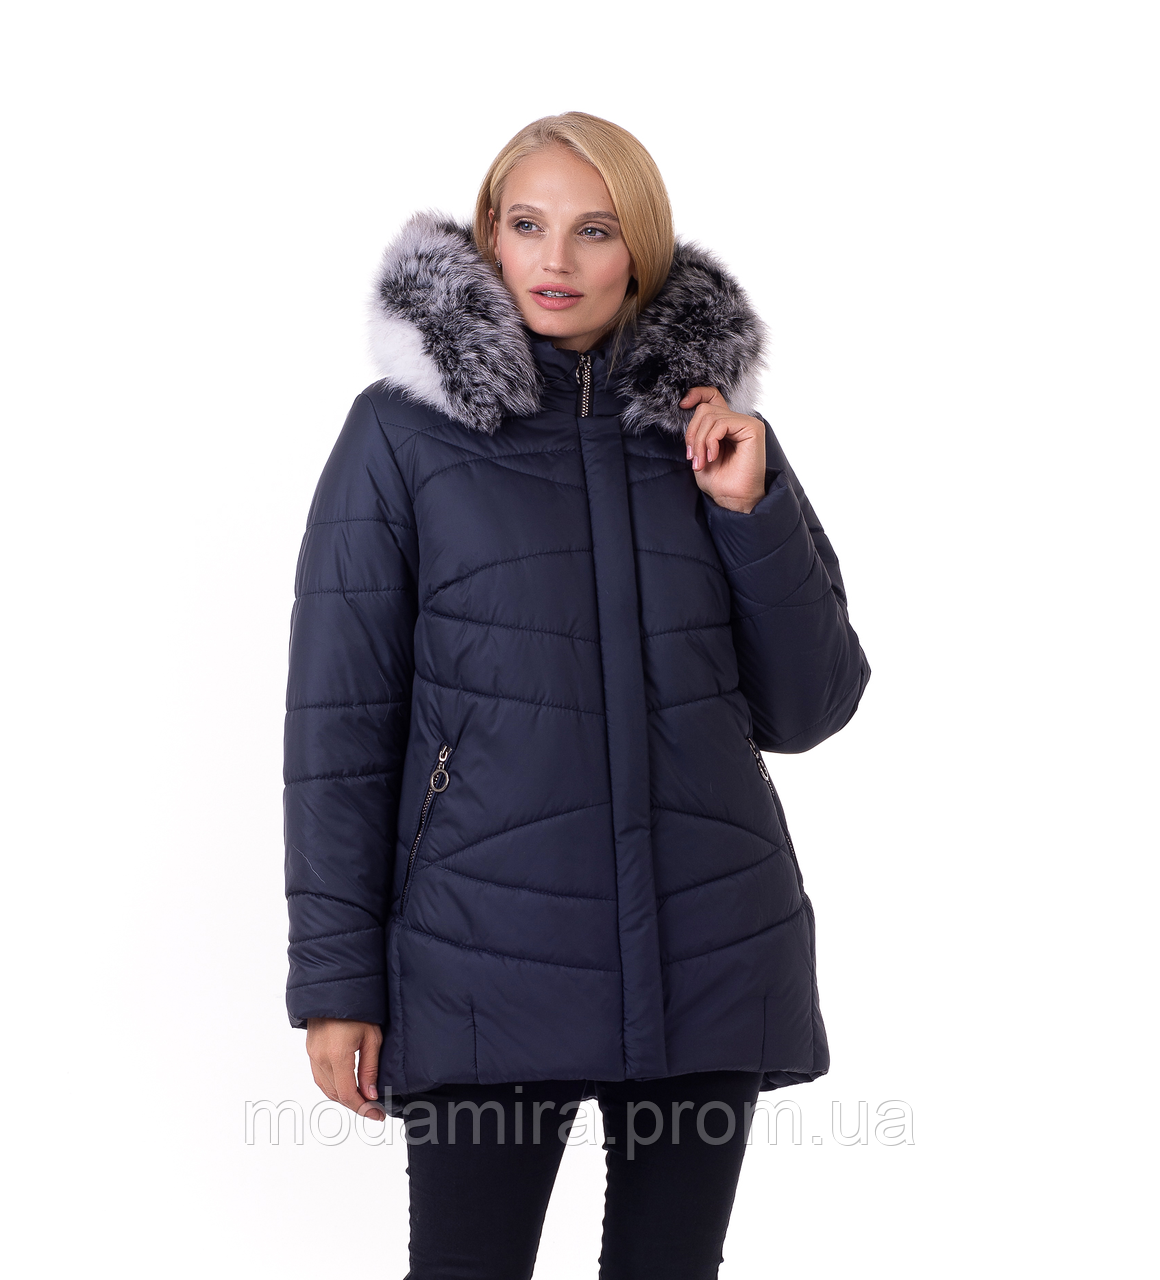 Жіноча зимова подовжена курточка з натуральним хутром. Жіночий зимовий пуховик — курточка Р- 48-62 Синя